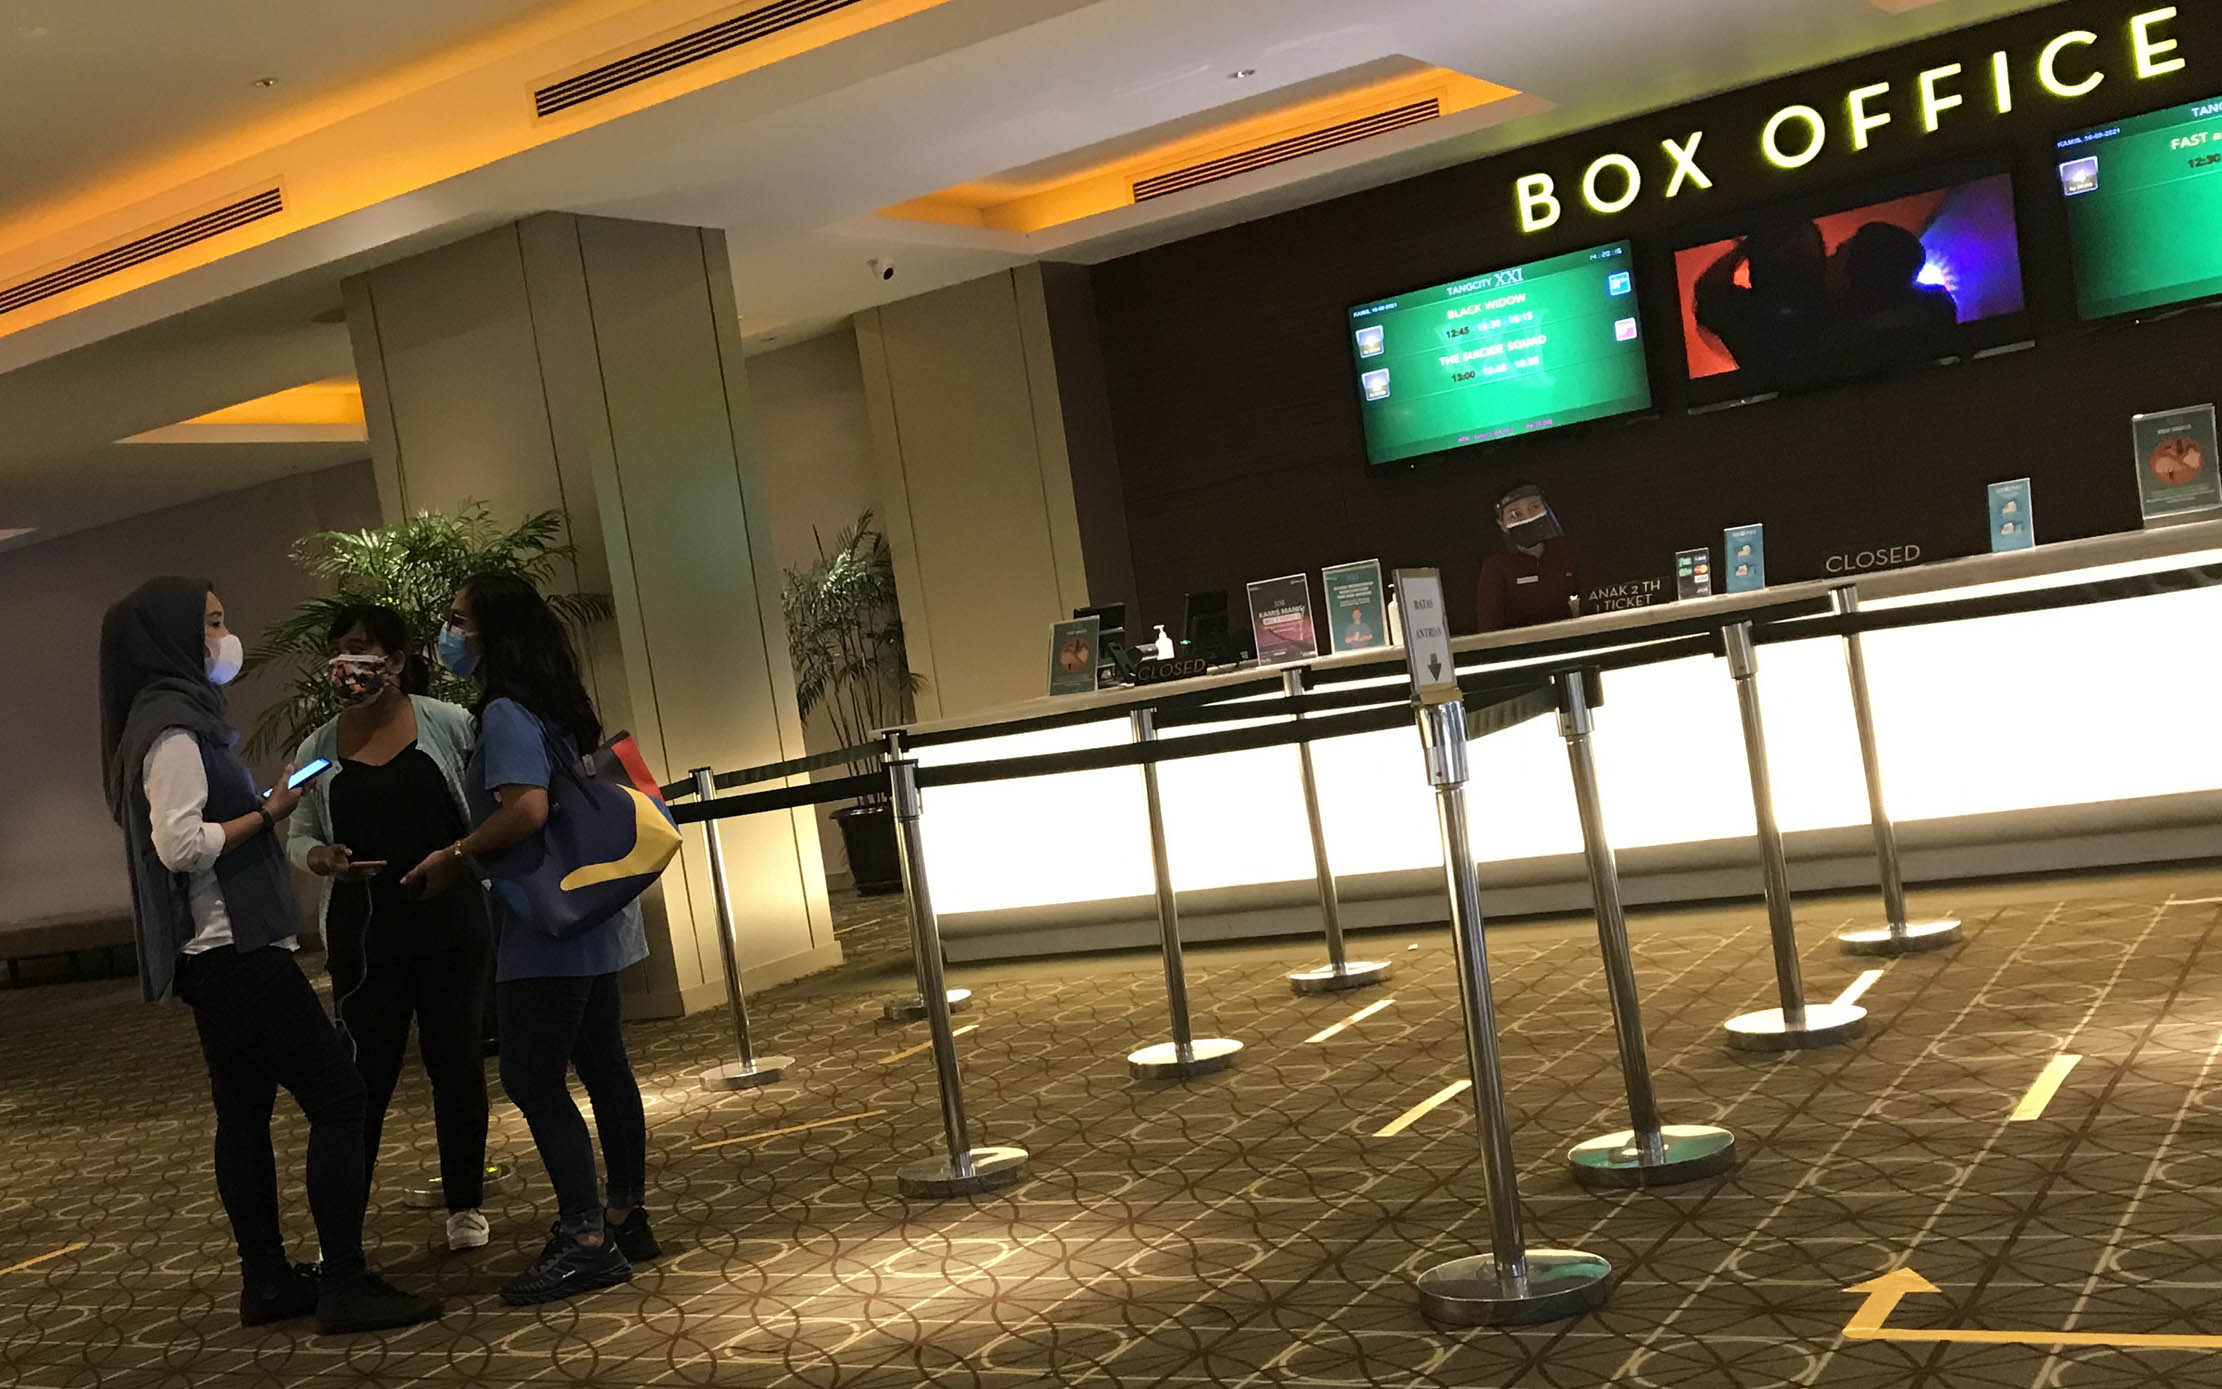 Pengunjung tengah menunggu waktu pemutaran film di sebuah bioskop XXI di pusat perbelanjaan Kota Tangerang, Kamis 16 September 2021. Foto : Panji Asmoro/TrenAsia